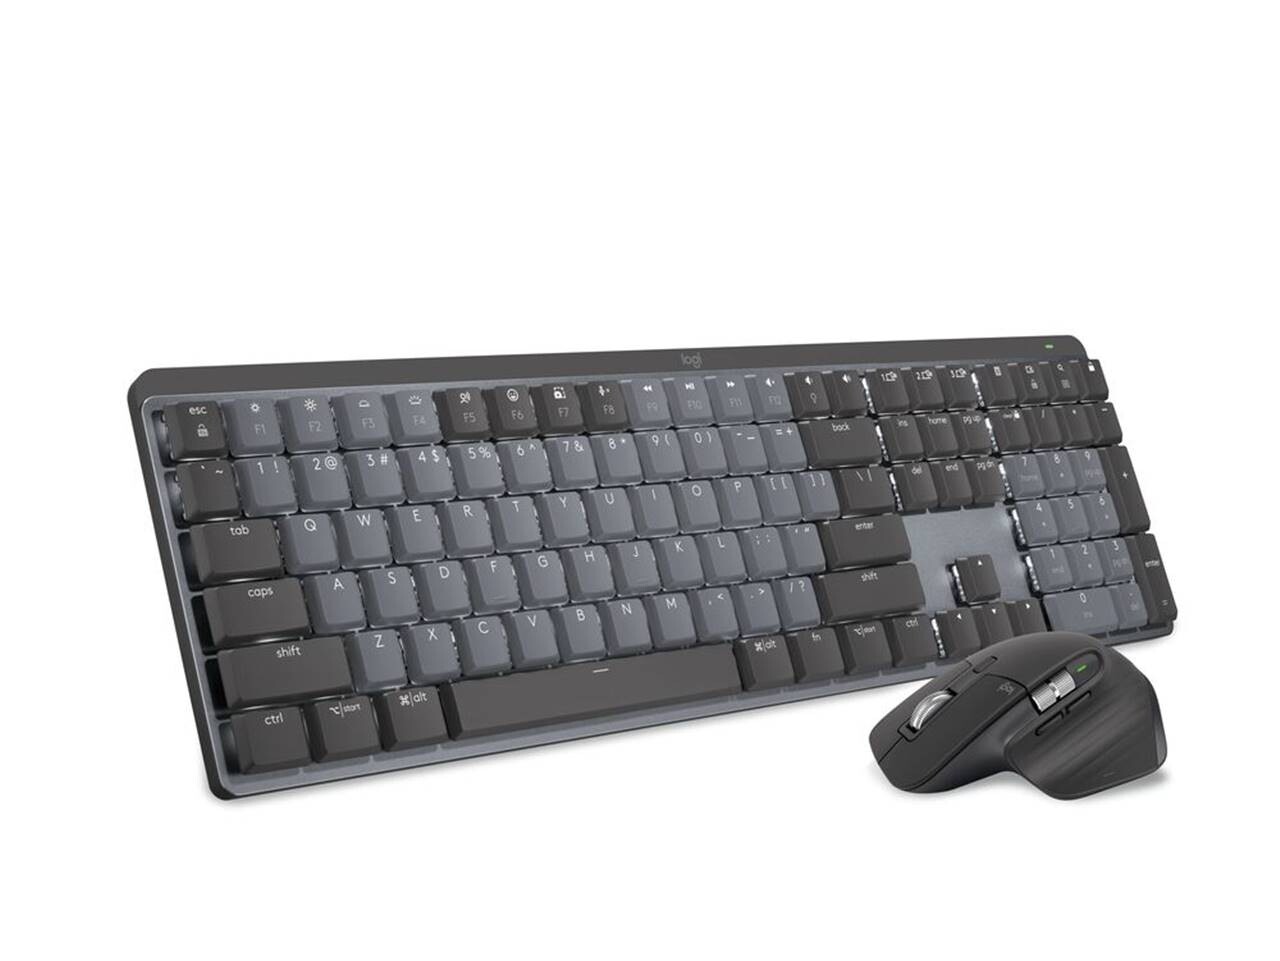 Logitech MX Mekanik Klavye, MX Mekanik Mini Klavye ve MX Master 3S Mouse Artık Türkiye’de  